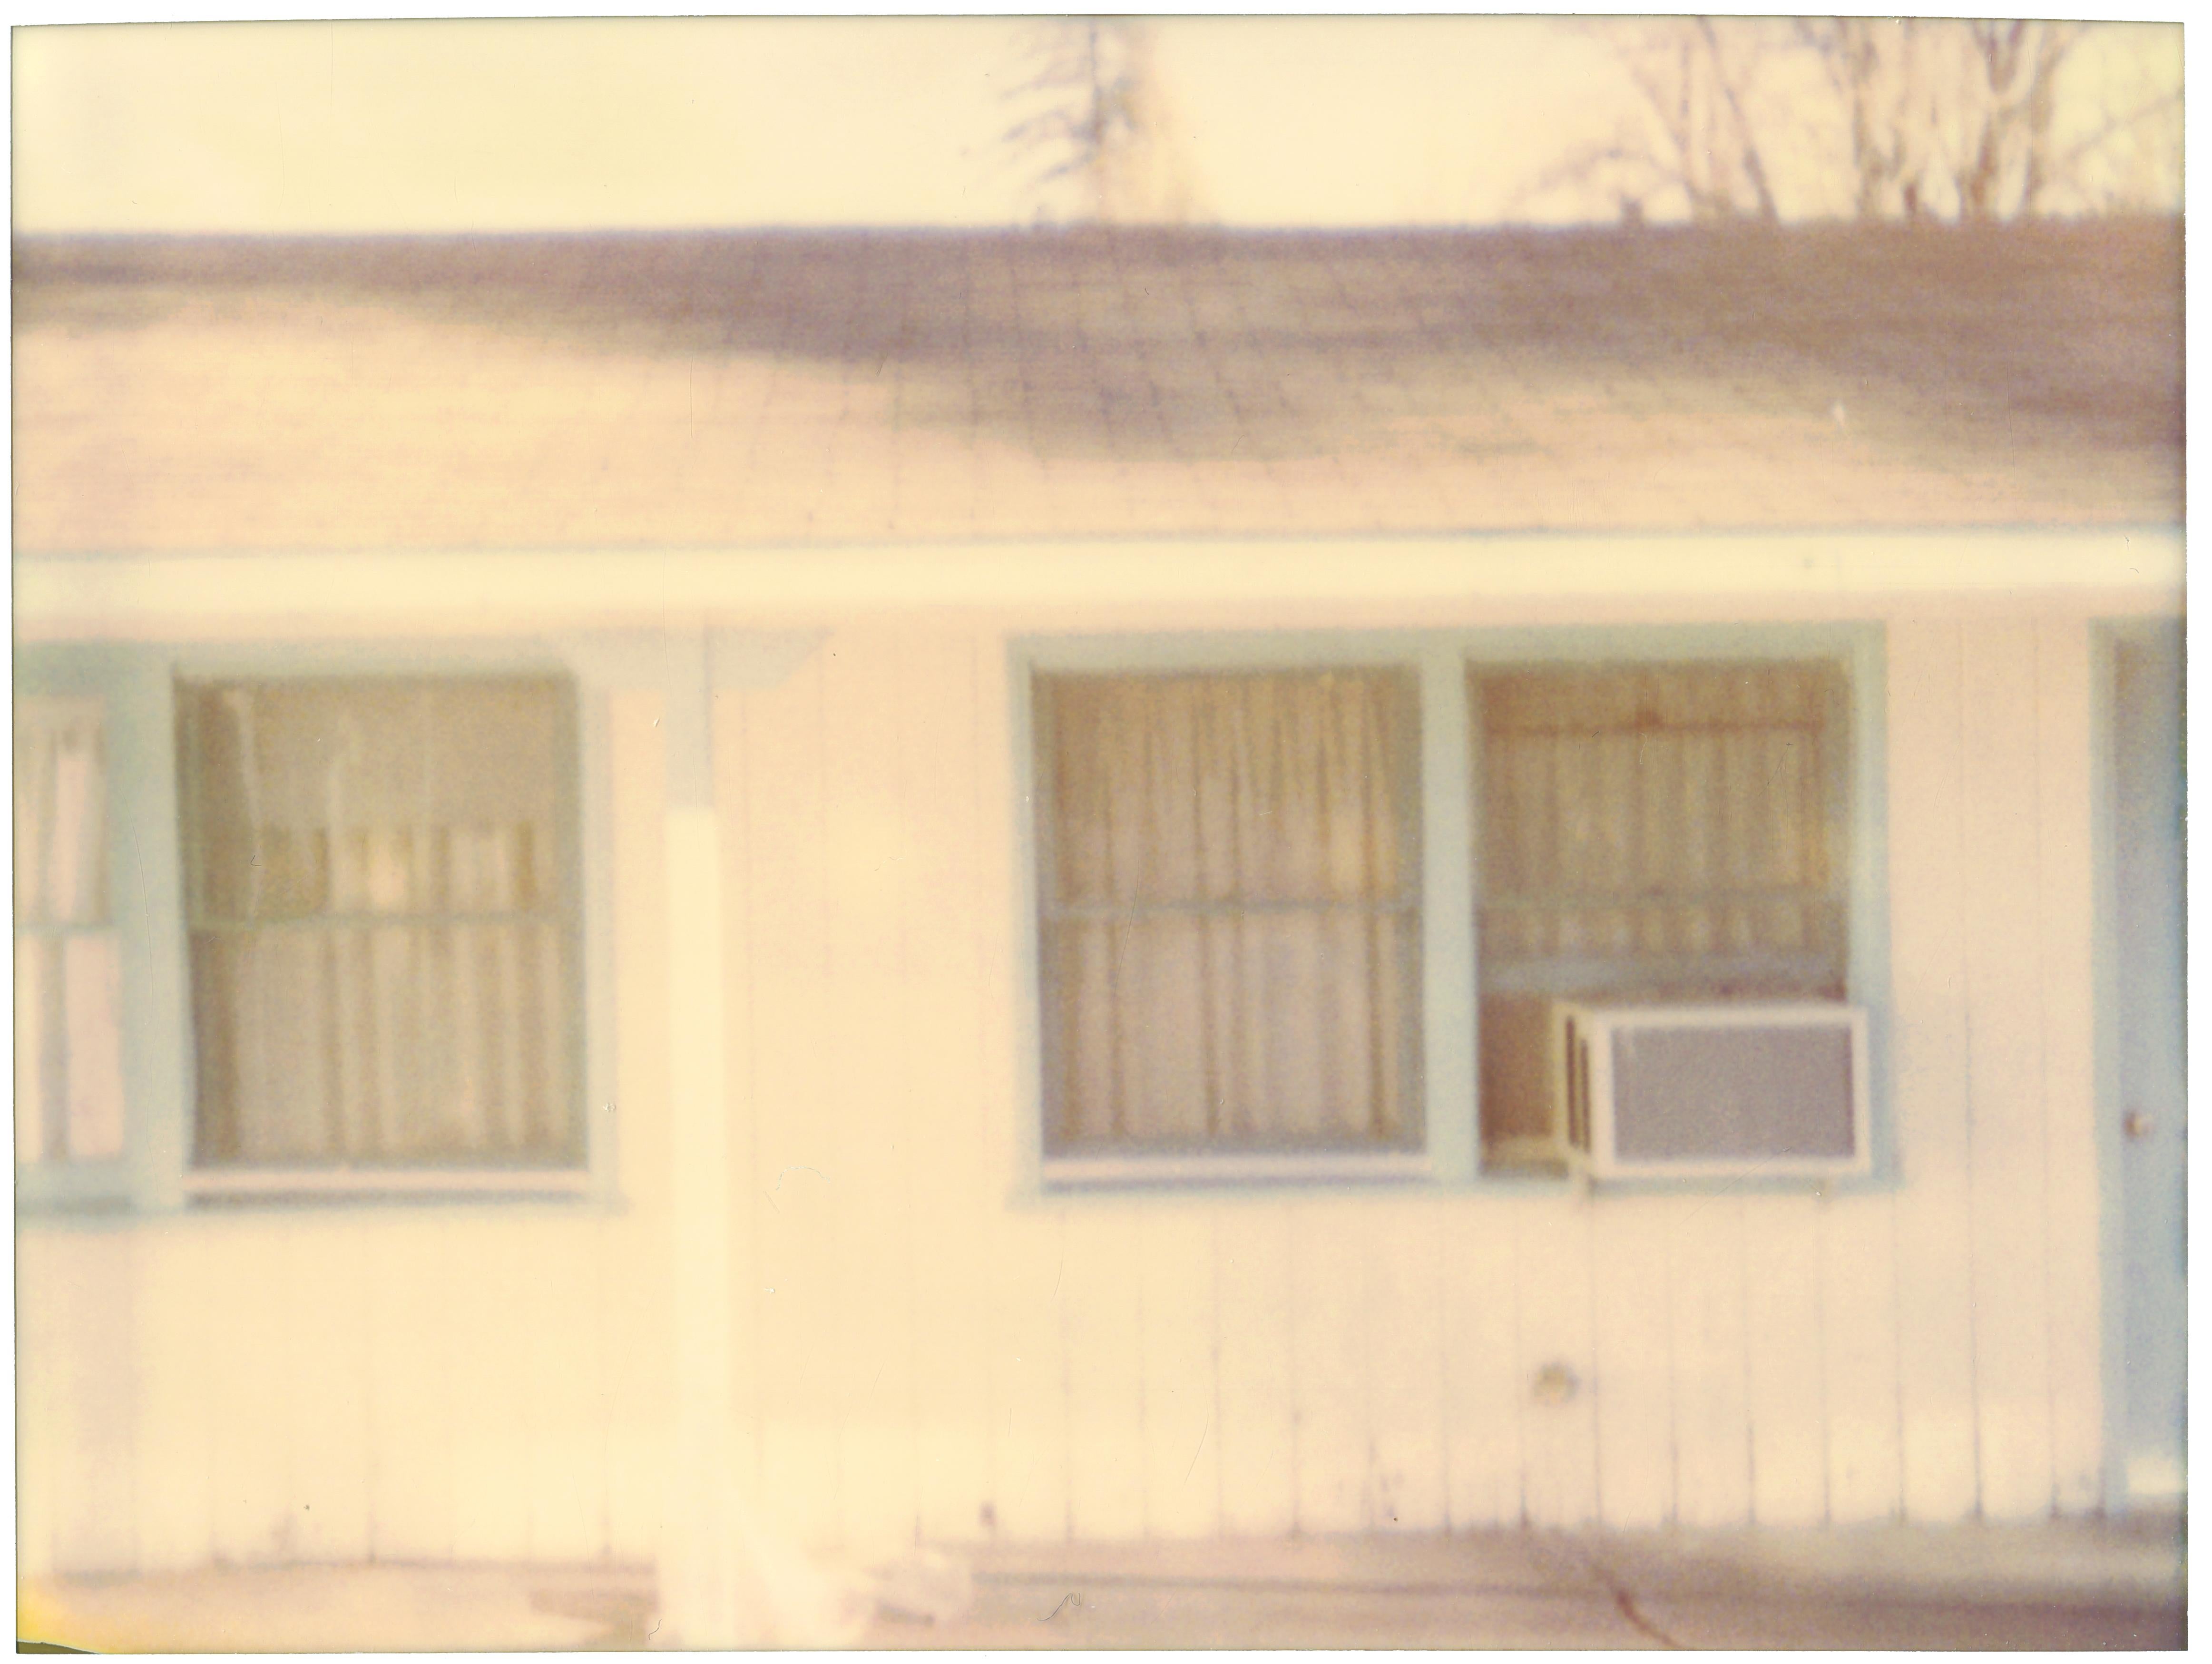 Stefanie Schneider Color Photograph – Lone Pine Motel I (Die letzte Bilderausstellung) 60x80cm, analog, handgedruckt, montiert